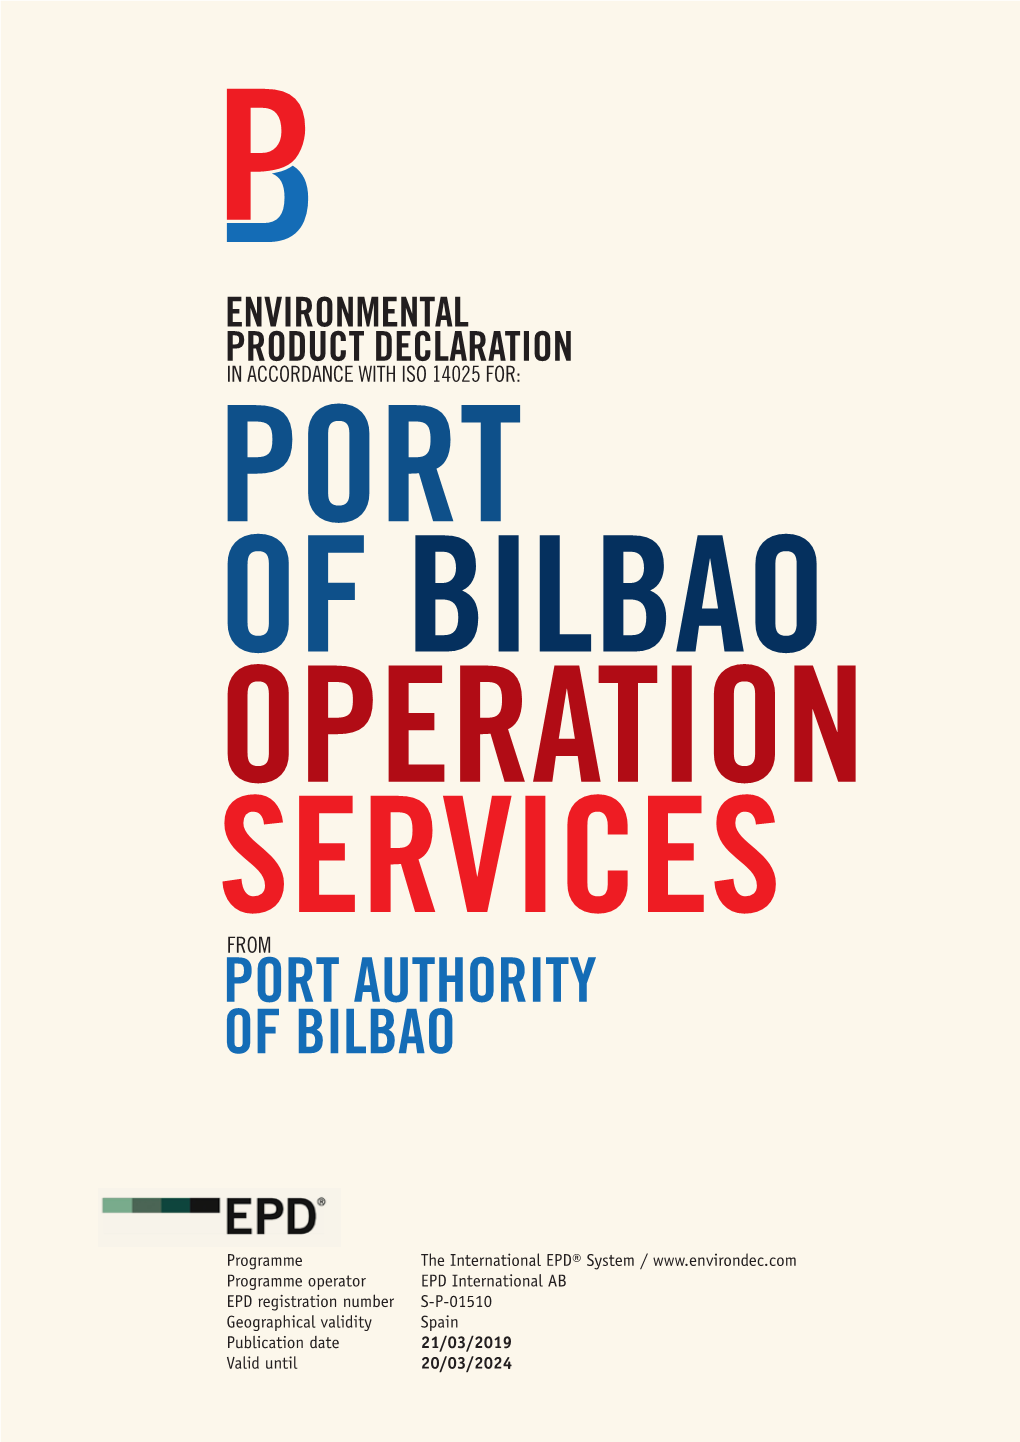 Port Authority of Bilbao